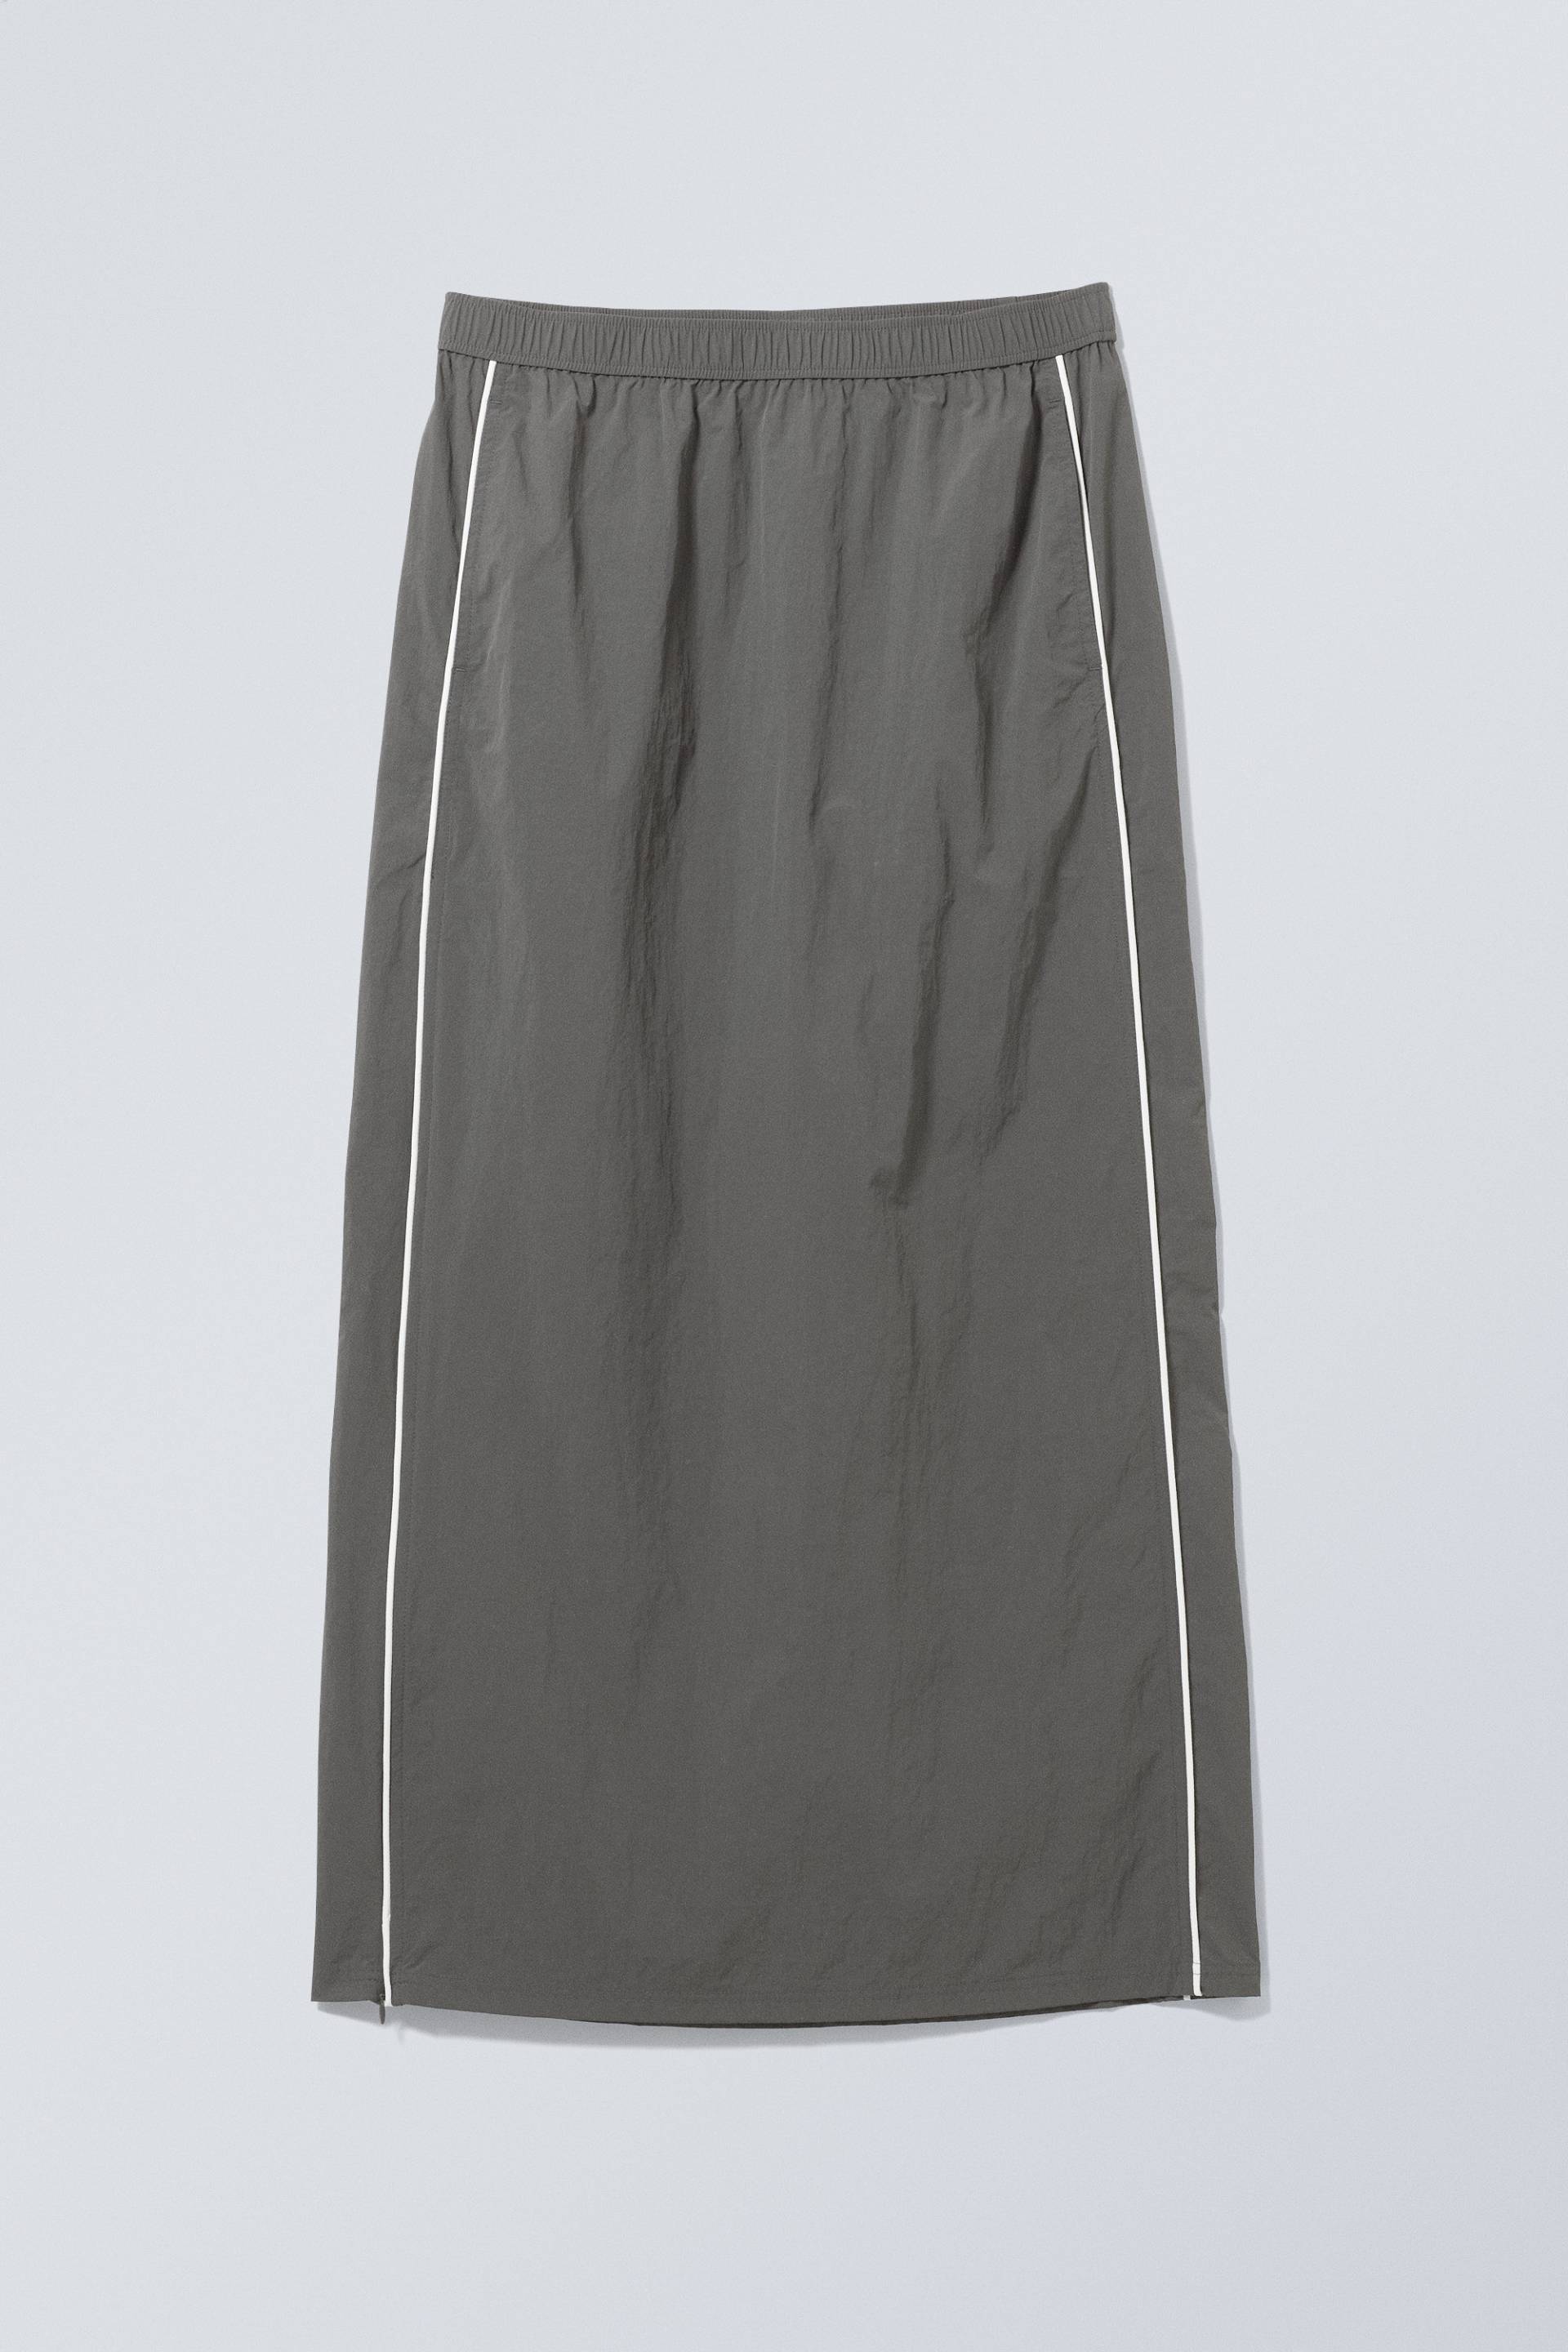 Weekday Trainingsanzug-Rock Daria Dunkelgrau, Röcke in Größe M. Farbe: Dark grey von Weekday